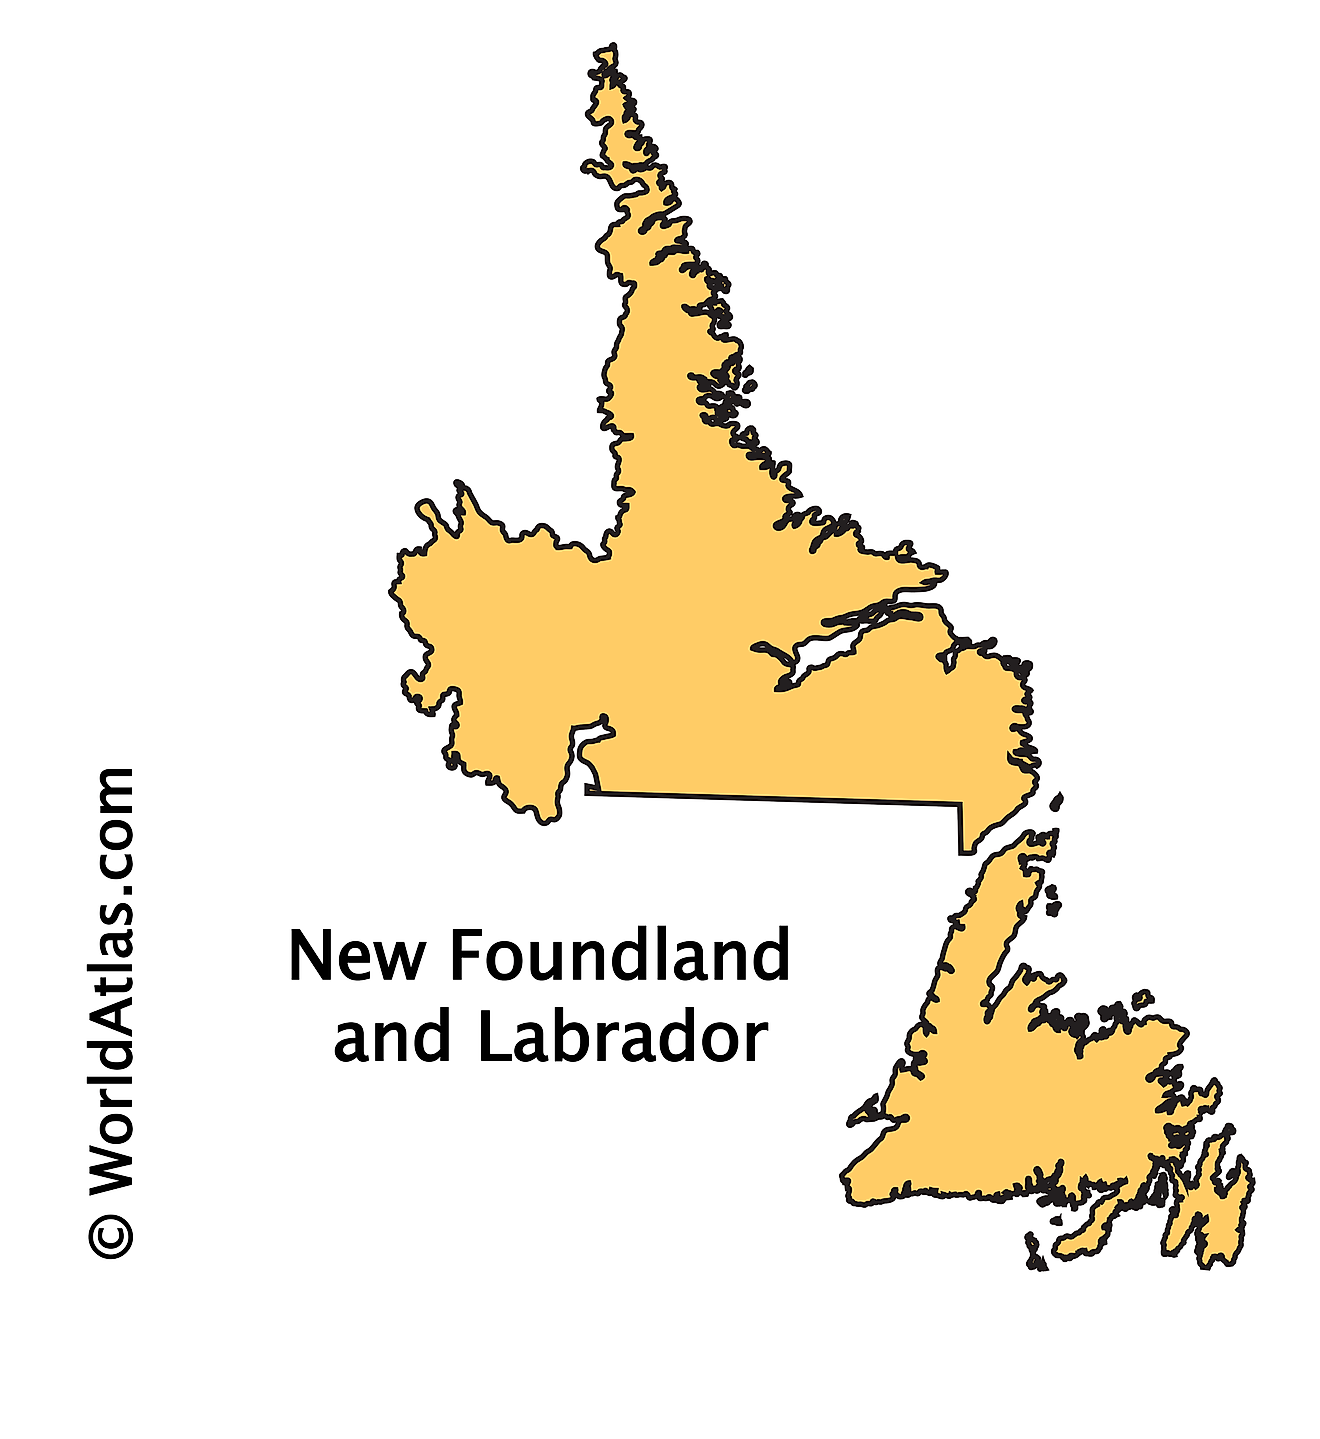 Outline Map of Newfoundland and Labrador